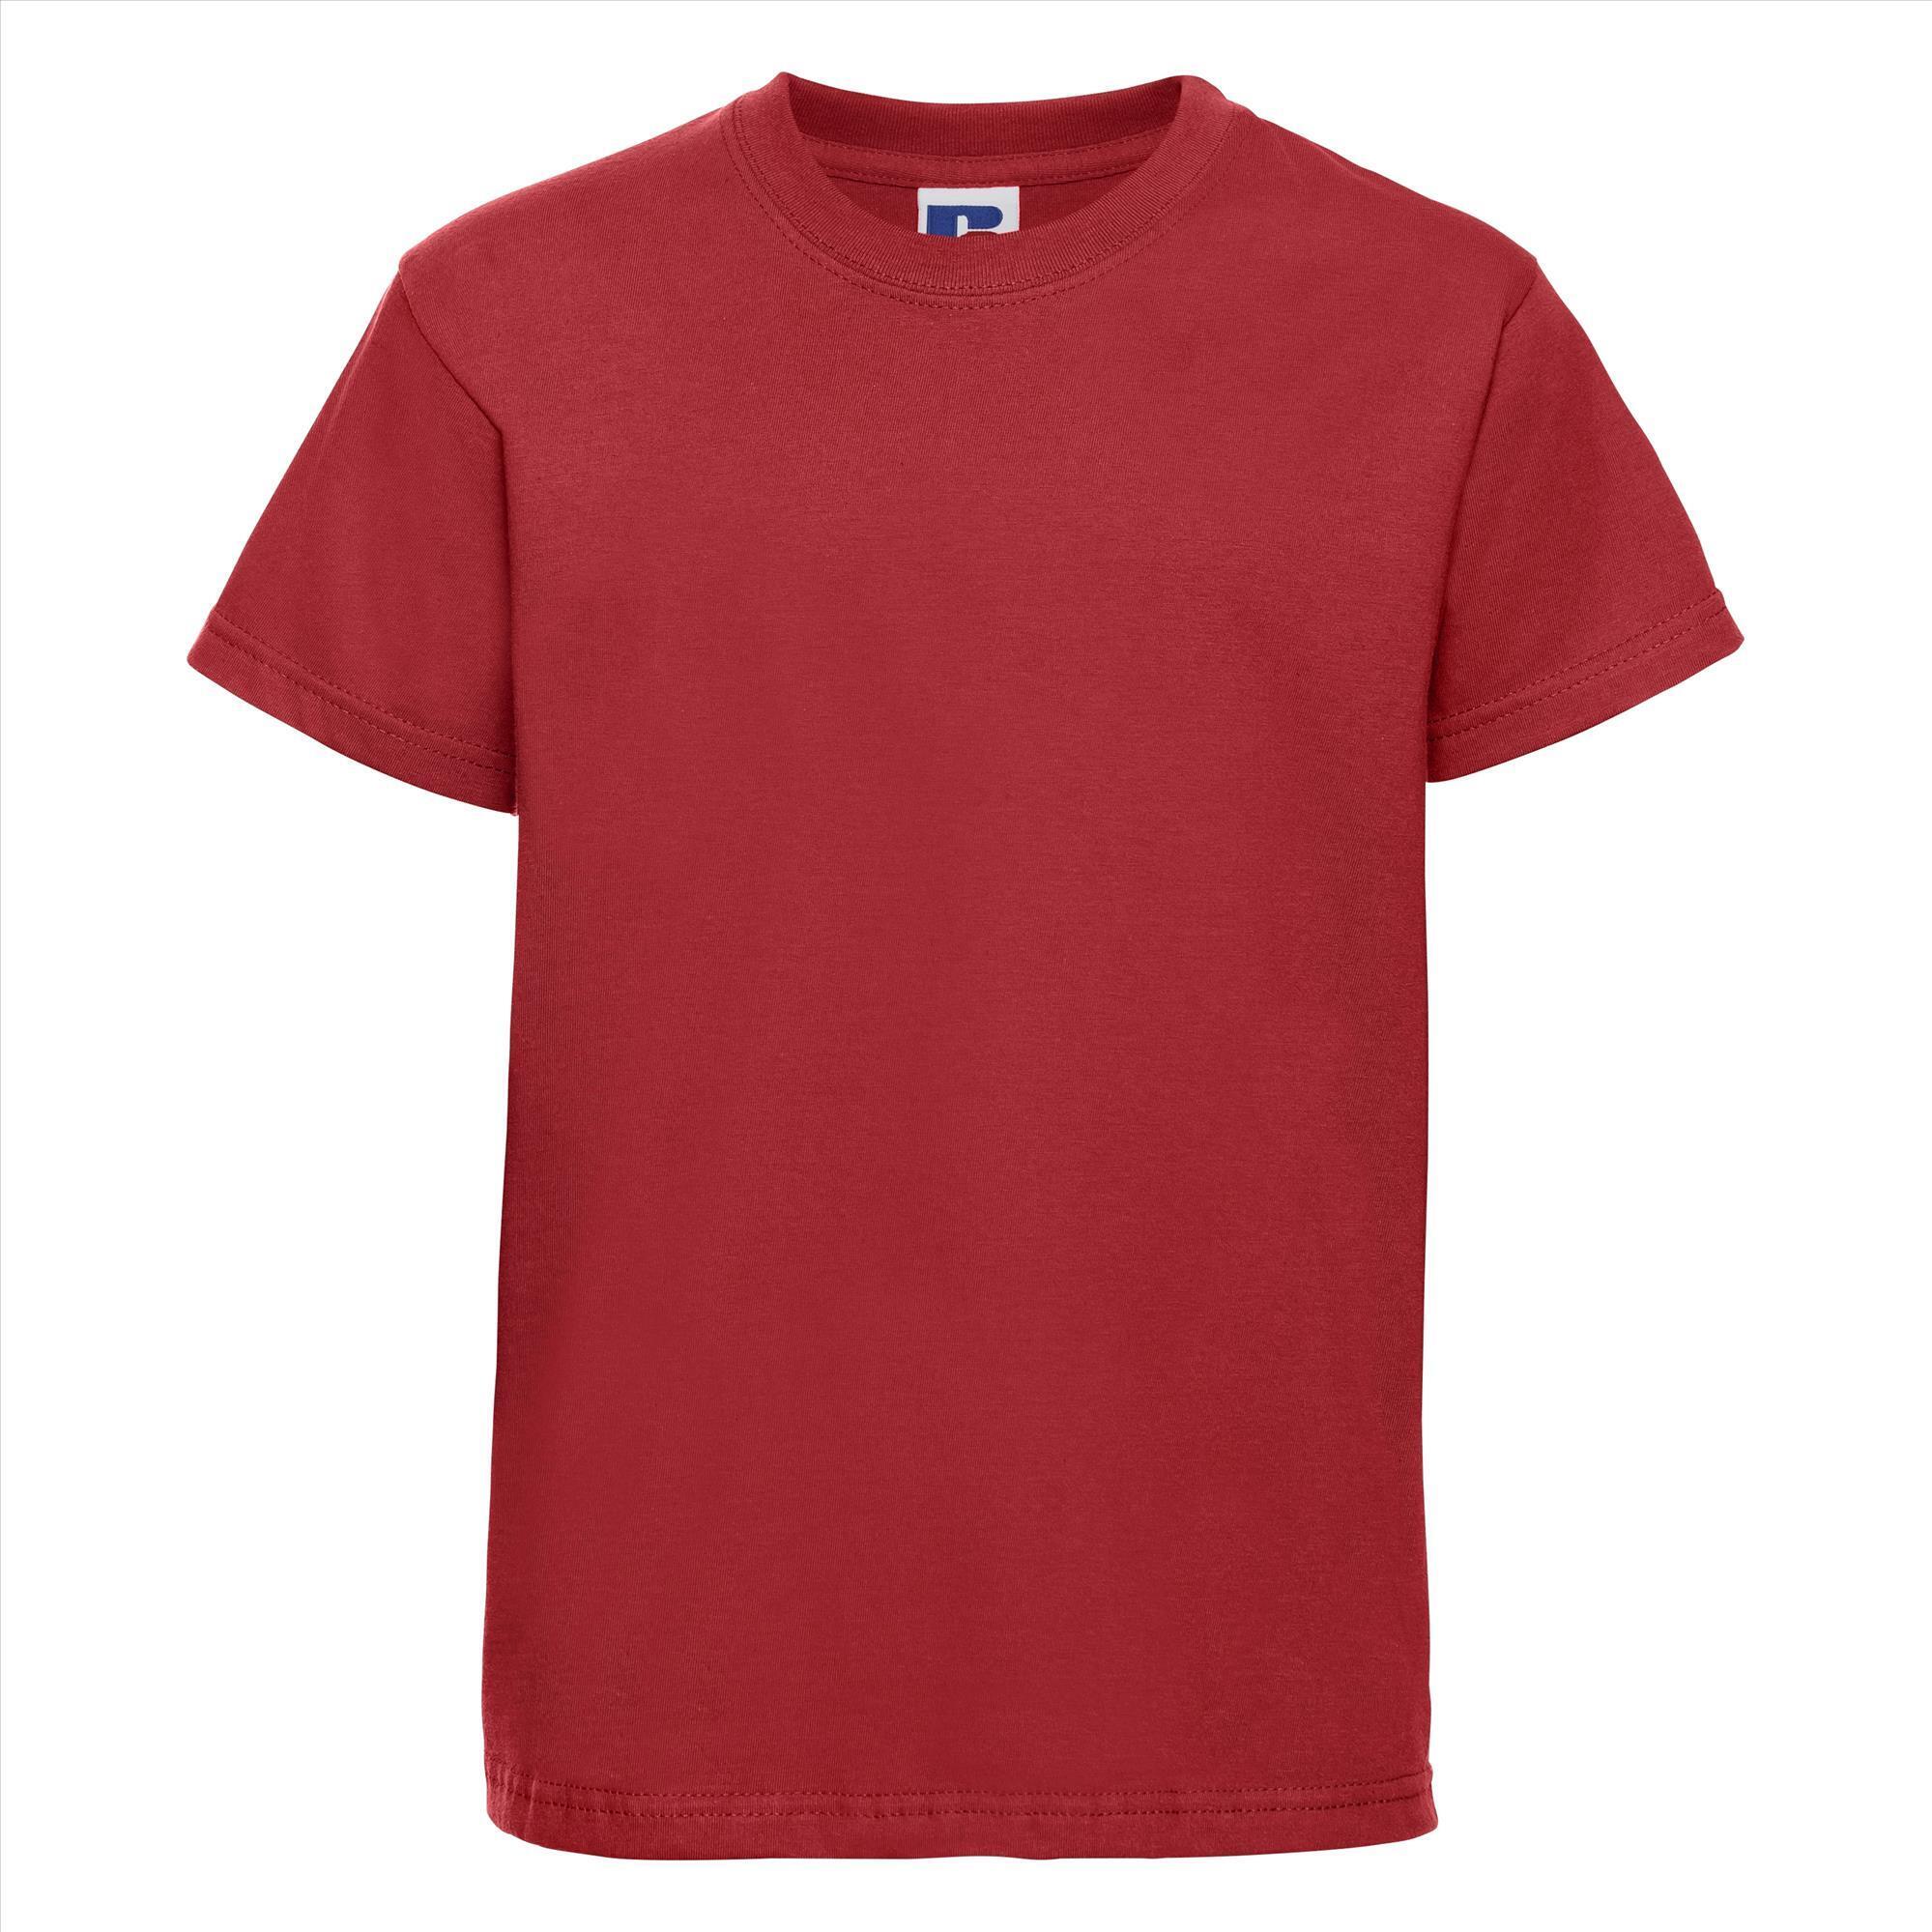 Kinder t-shirt helder rood te personaliseren bedrukbaar